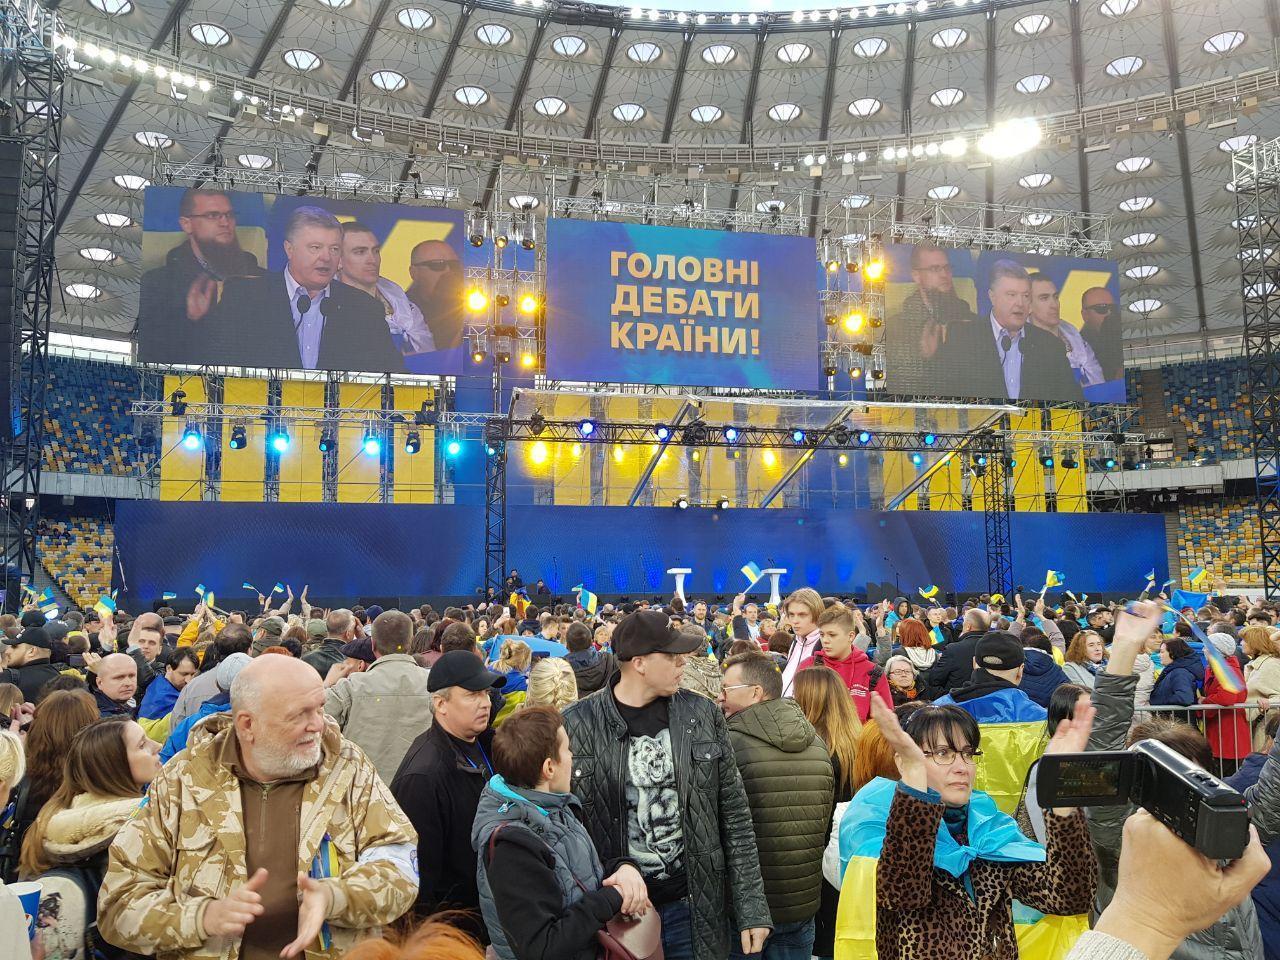 Ukraynada başkan adaylarının stat tartışması başladı